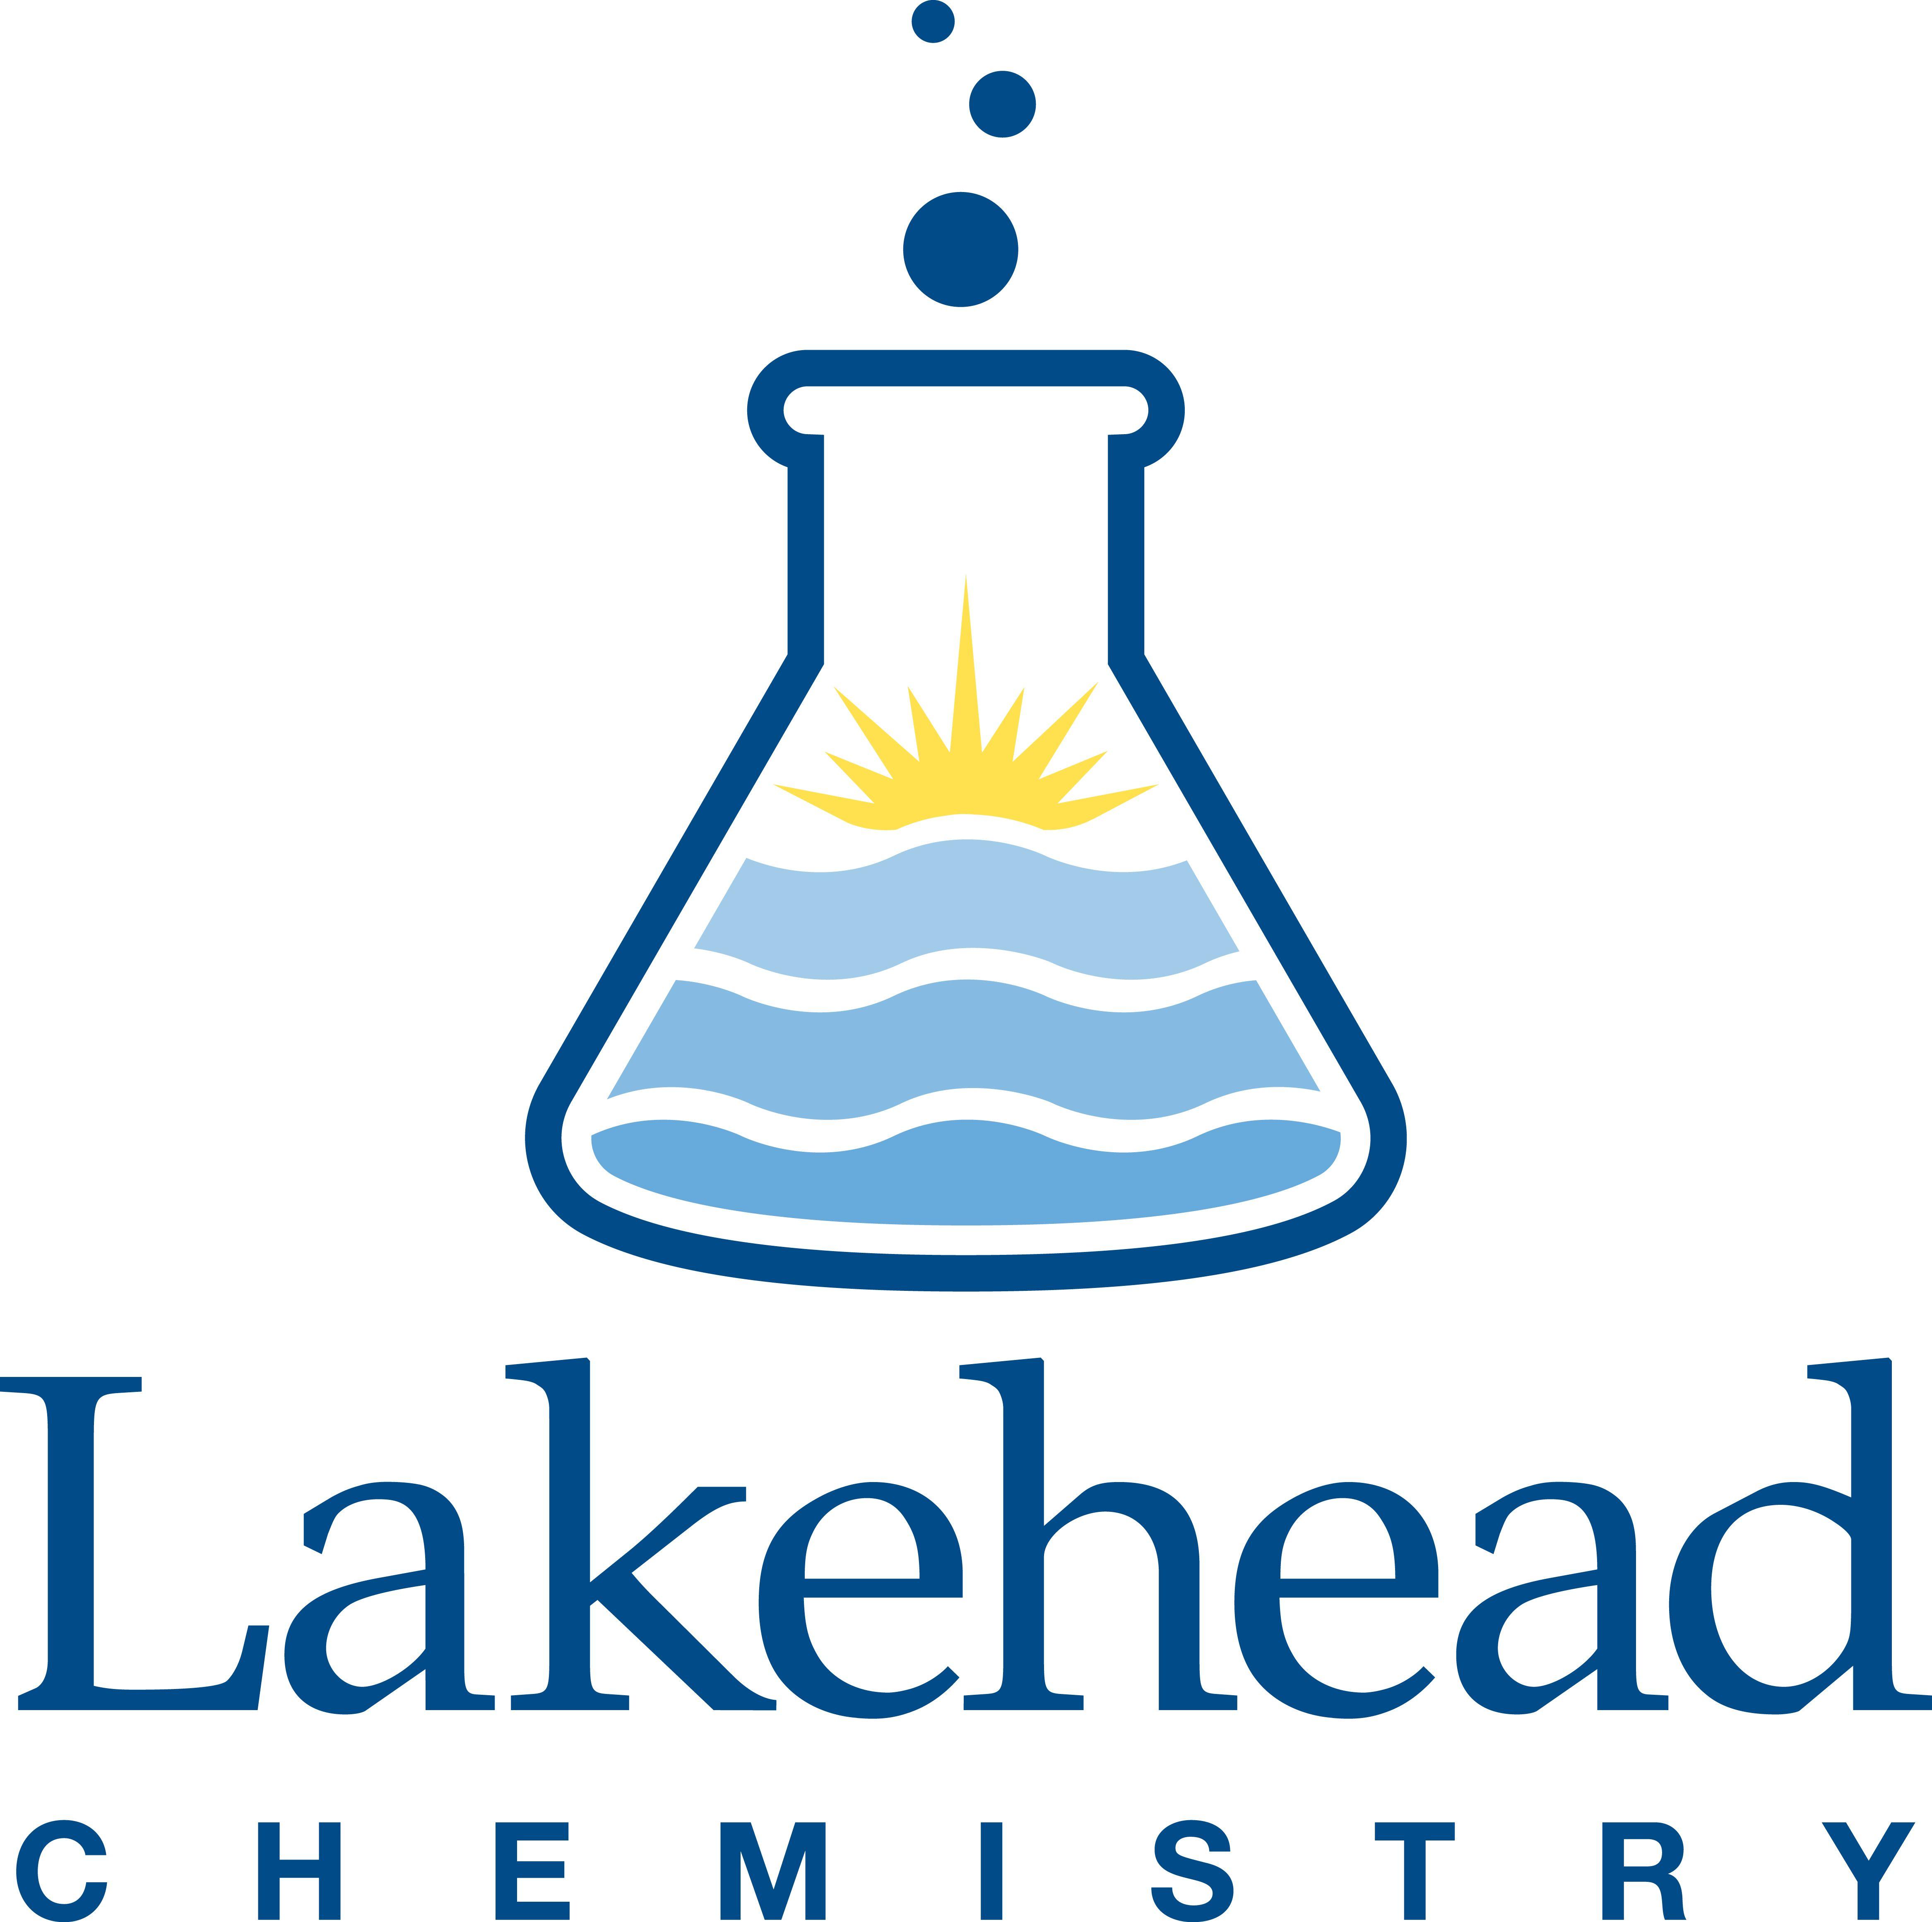 Chemisty Logo - Chemistry